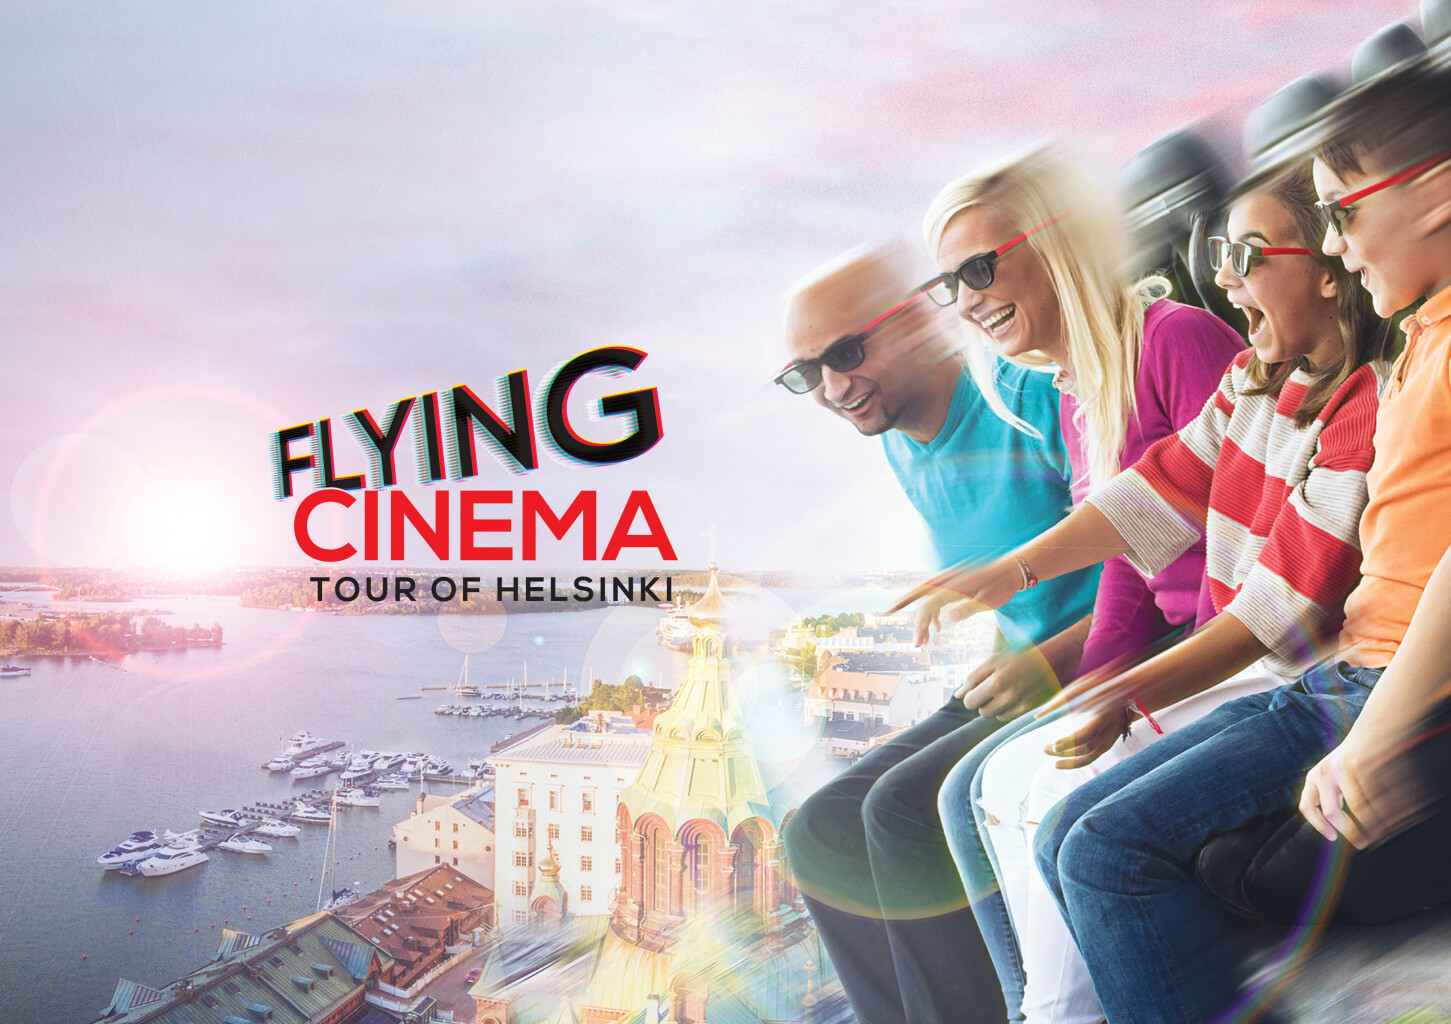 Flying cinema - Virtuaalielokuvaelämys perheelle | Helsinki